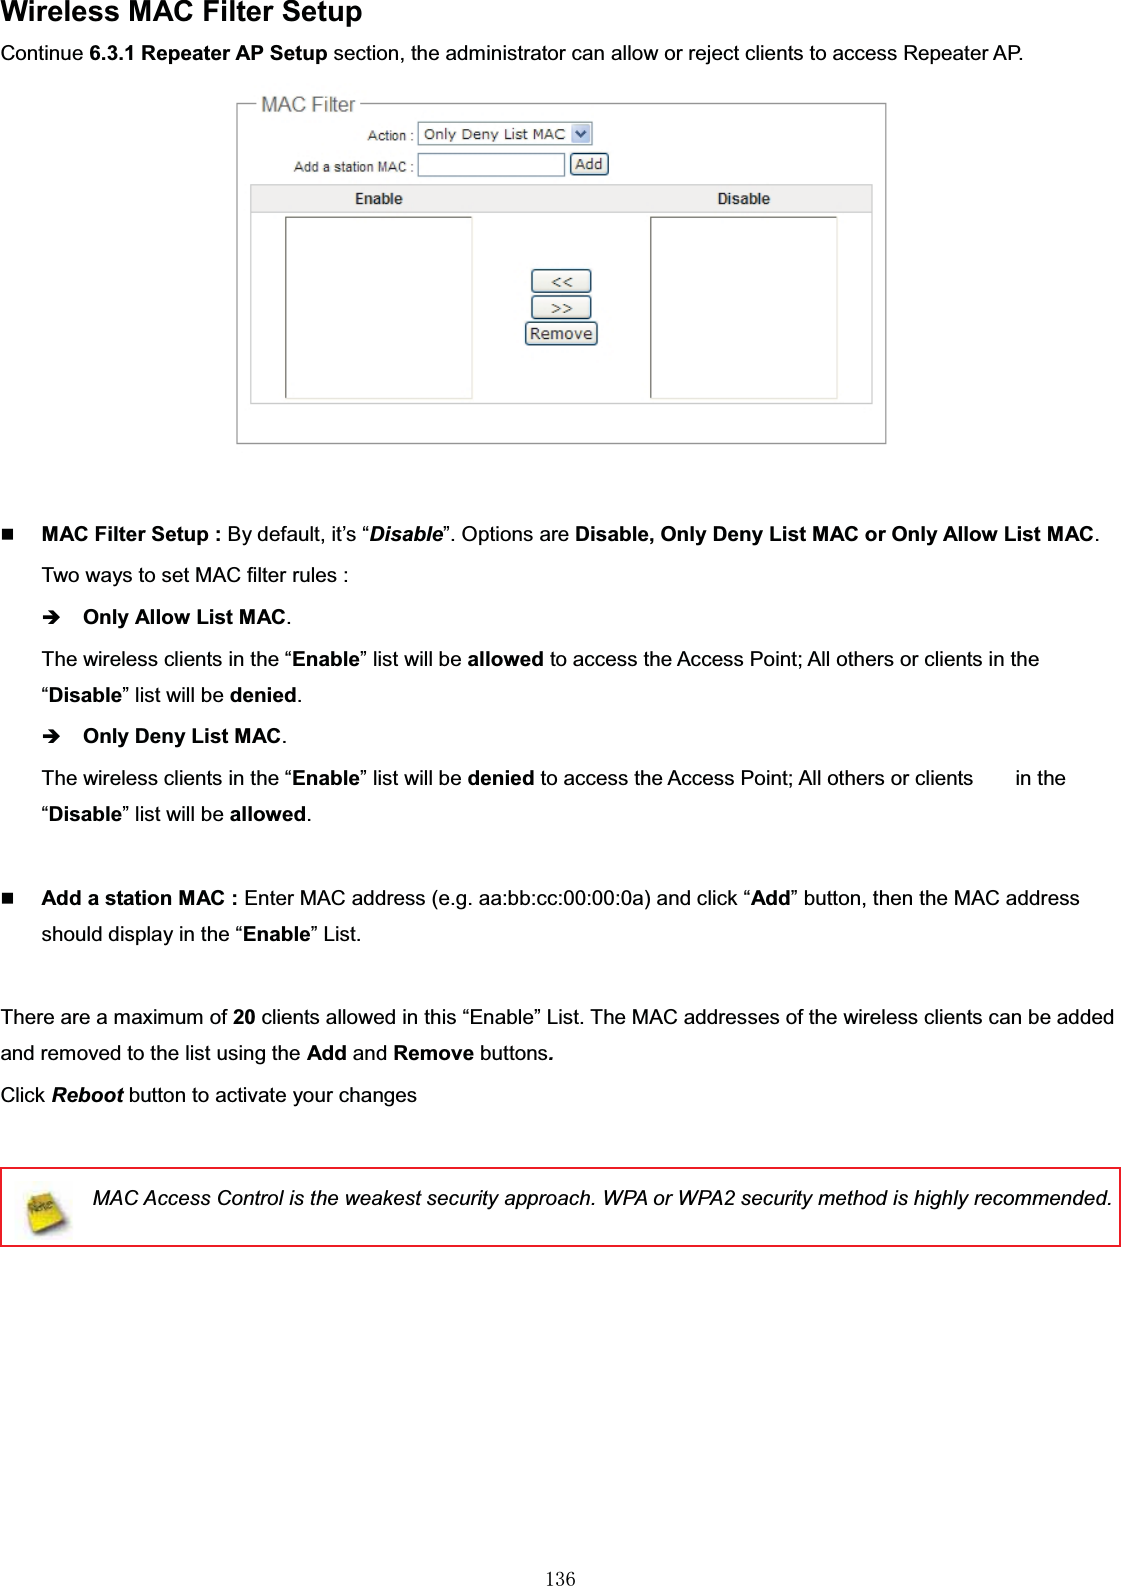 㻝㻟㻢Wireless MAC Filter SetupContinue 6.3.1 Repeater AP Setup section, the administrator can allow or reject clients to access Repeater AP. MAC Filter Setup : By default, it’s “Disable”. Options are Disable, Only Deny List MAC or Only Allow List MAC.Two ways to set MAC filter rules :ÎOnly Allow List MAC.The wireless clients in the “Enable” list will be allowed to access the Access Point; All others or clients in the “Disable” list will be denied.ÎOnly Deny List MAC.The wireless clients in the “Enable” list will be denied to access the Access Point; All others or clients        in the “Disable” list will be allowed.Add a station MAC : Enter MAC address (e.g. aa:bb:cc:00:00:0a) and click “Add” button, then the MAC address should display in the “Enable” List.There are amaximumof20 clients allowed in this “Enable” List. The MAC addresses of the wireless clients can be added and removed to the list using the Add and Remove buttons.Click Reboot button to activate your changesMAC Access Control is the weakest security approach. WPA or WPA2 security method is highly recommended.